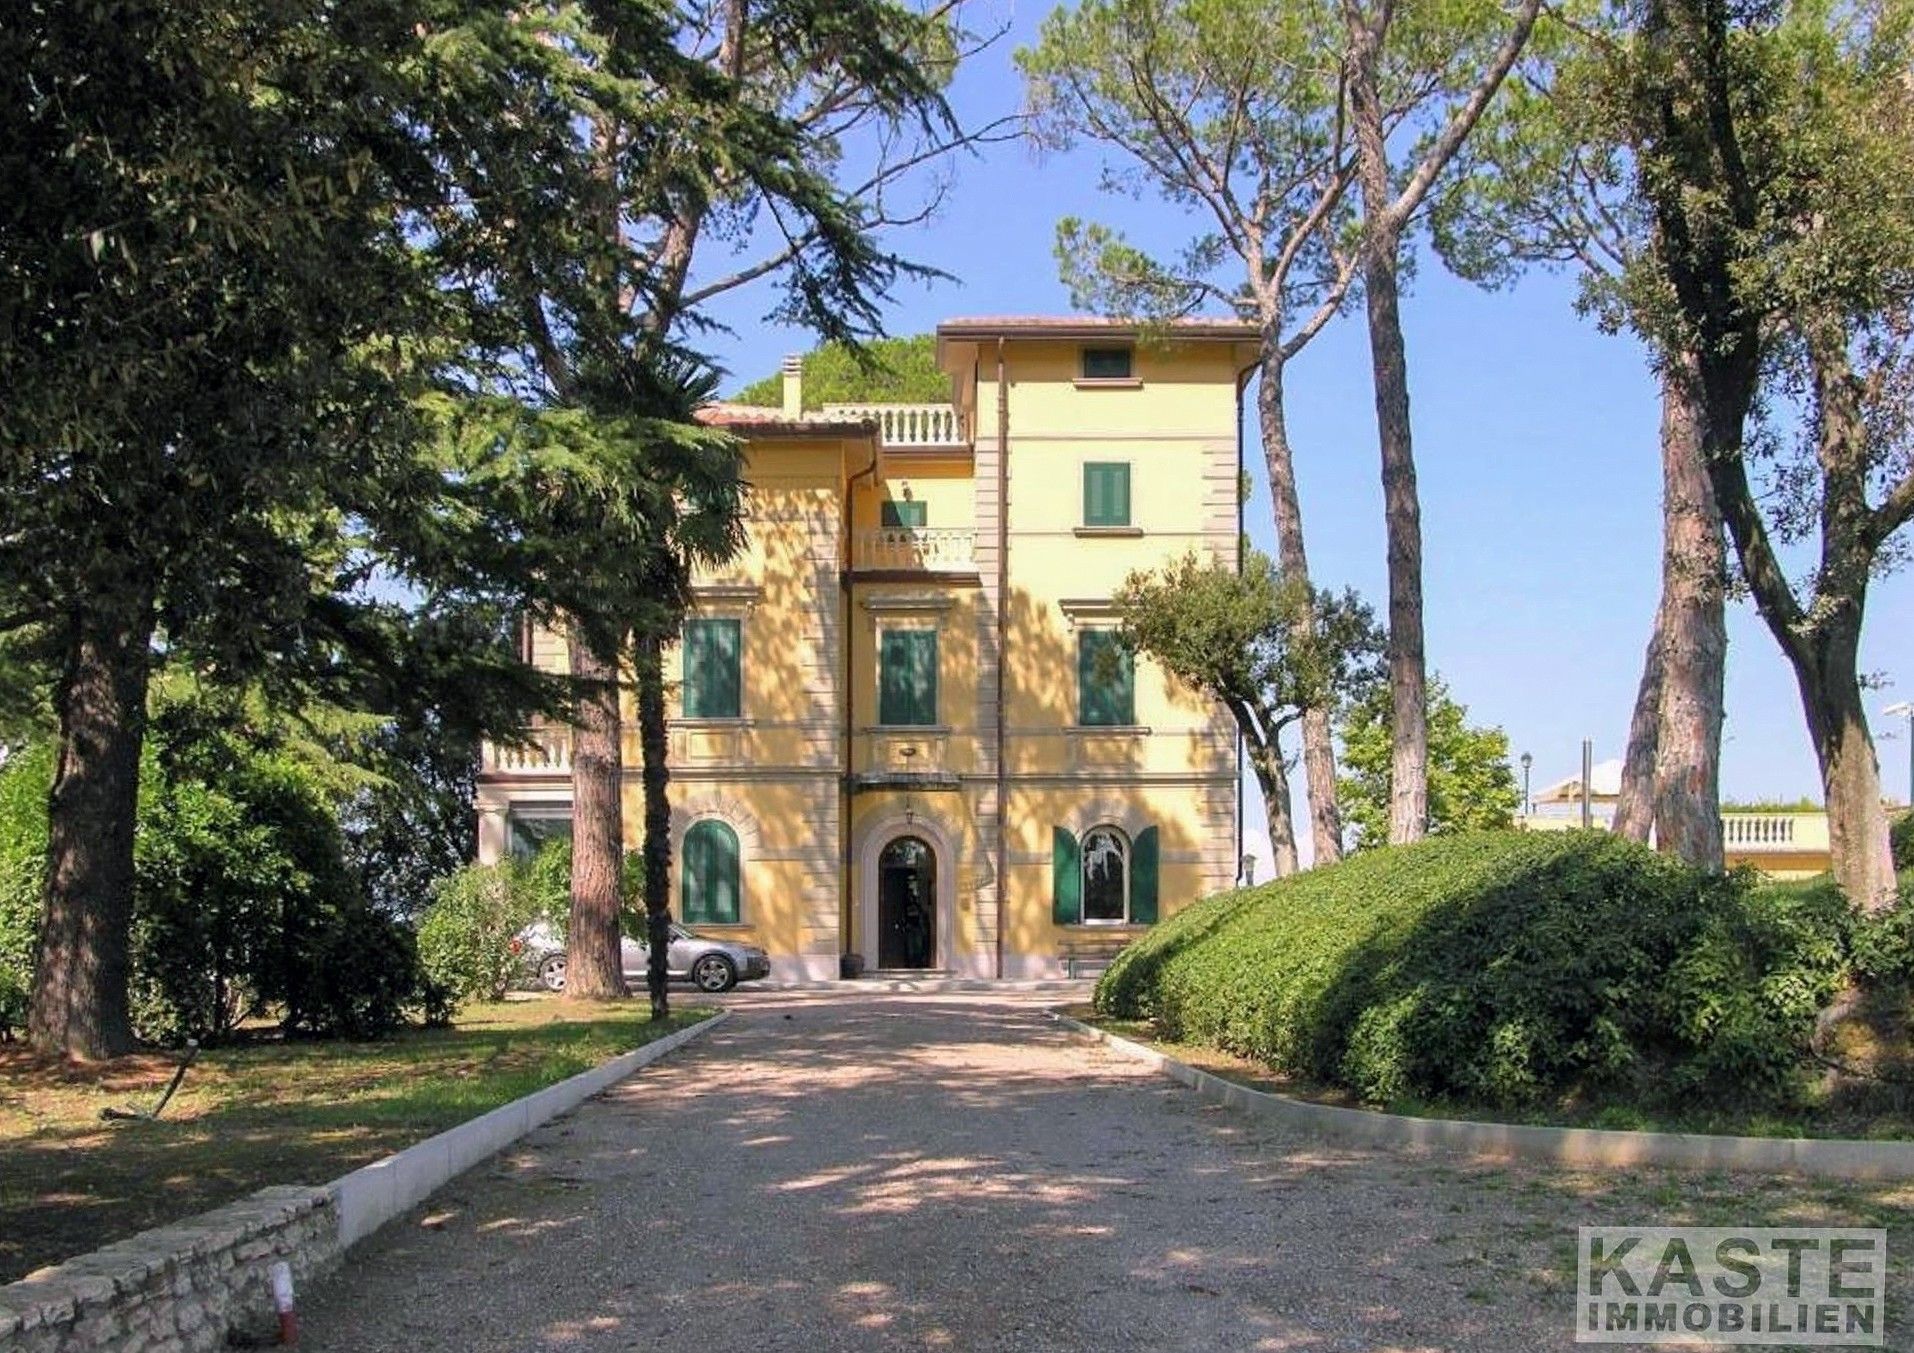 Immagini Villa in Toscana con 5 ettari di terreno e vigneto